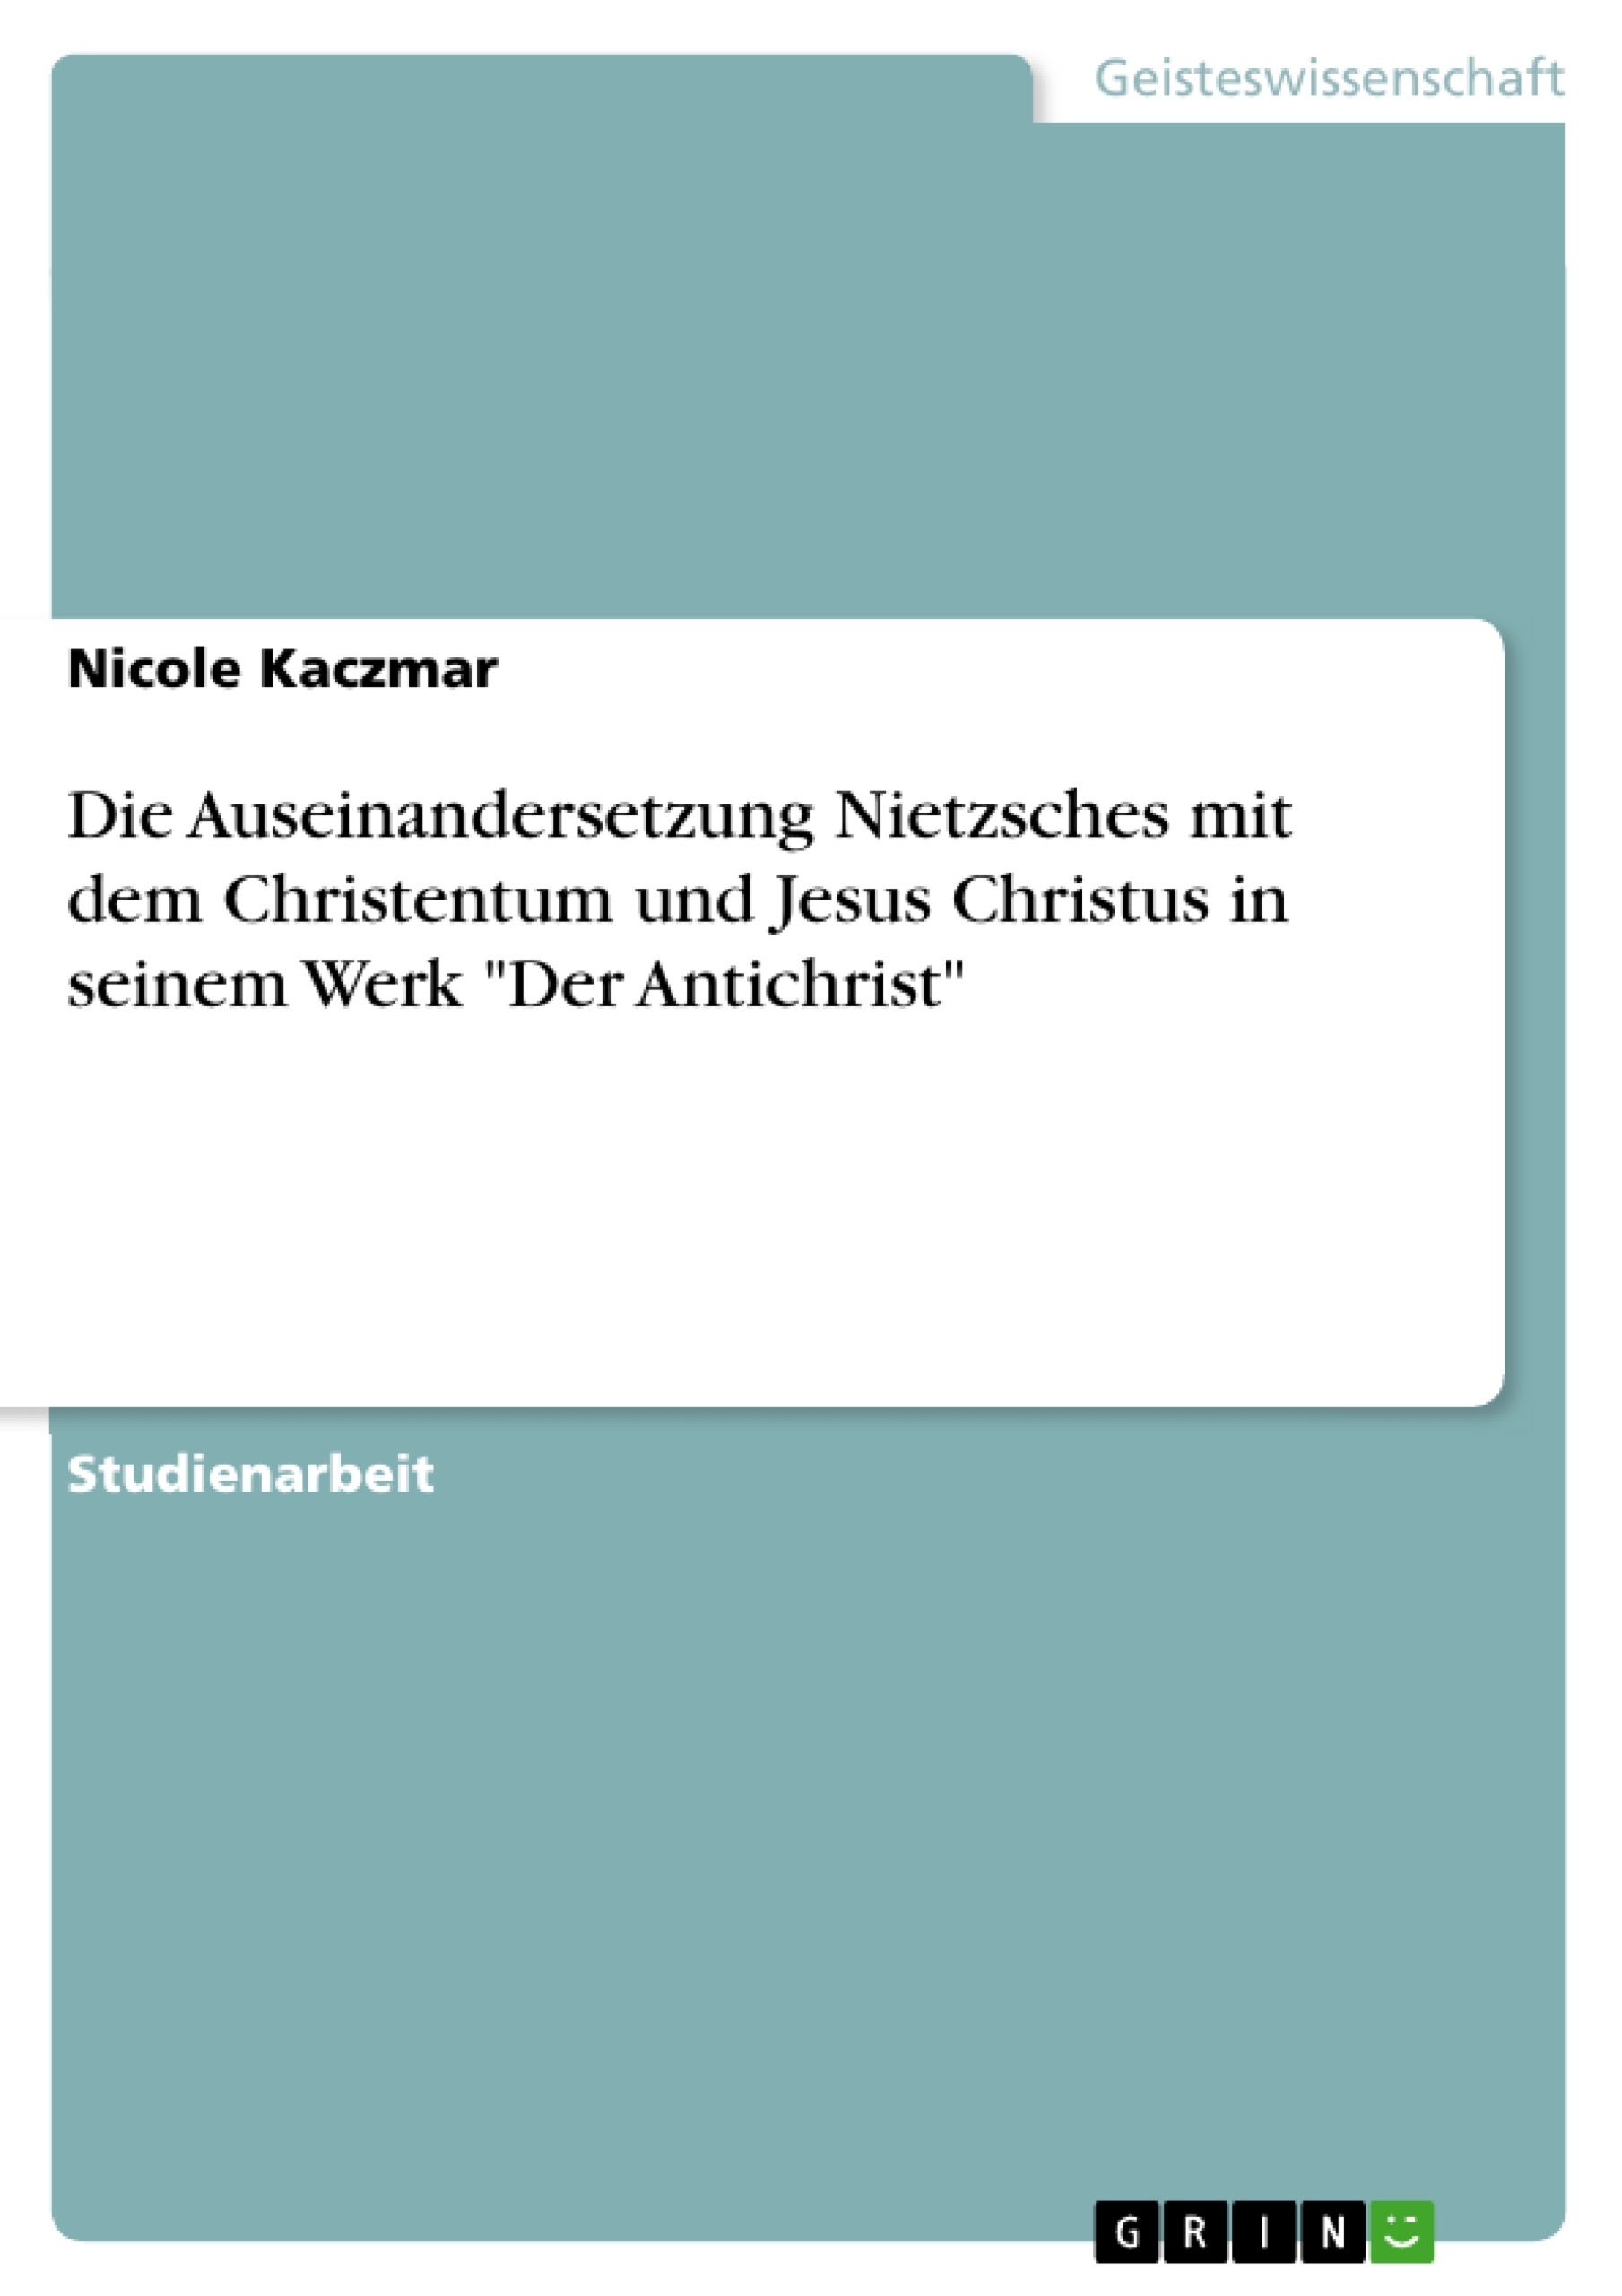 Titre: Die Auseinandersetzung Nietzsches mit dem Christentum und Jesus Christus in seinem Werk "Der Antichrist"